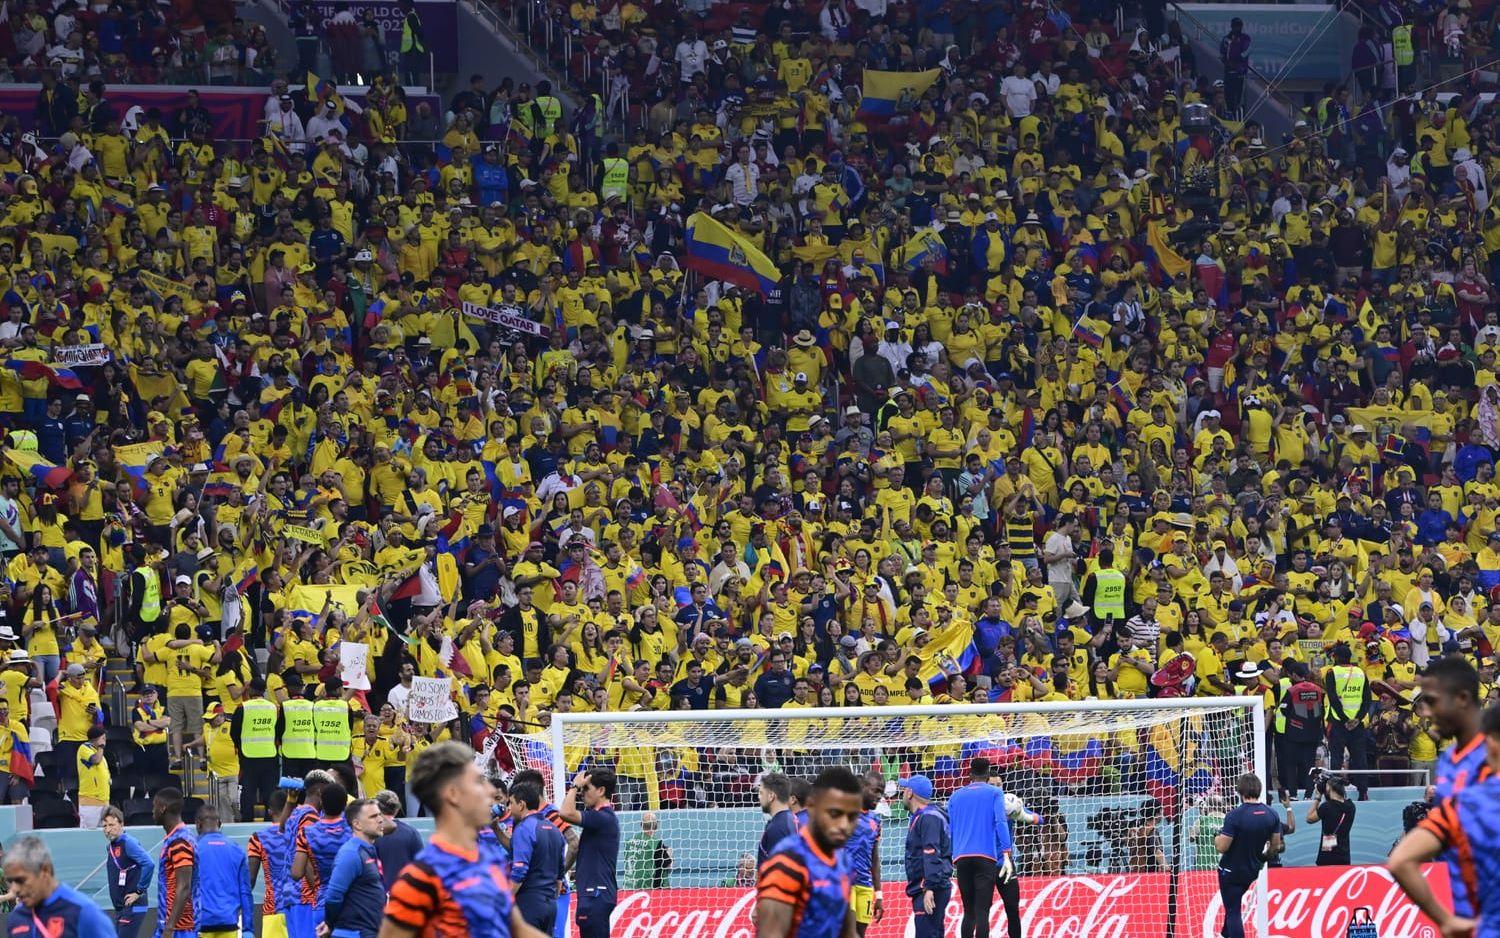 Trots det var det endast när supportrarna från Ecuador sjöng som det kändes som en fotbollsmatch.